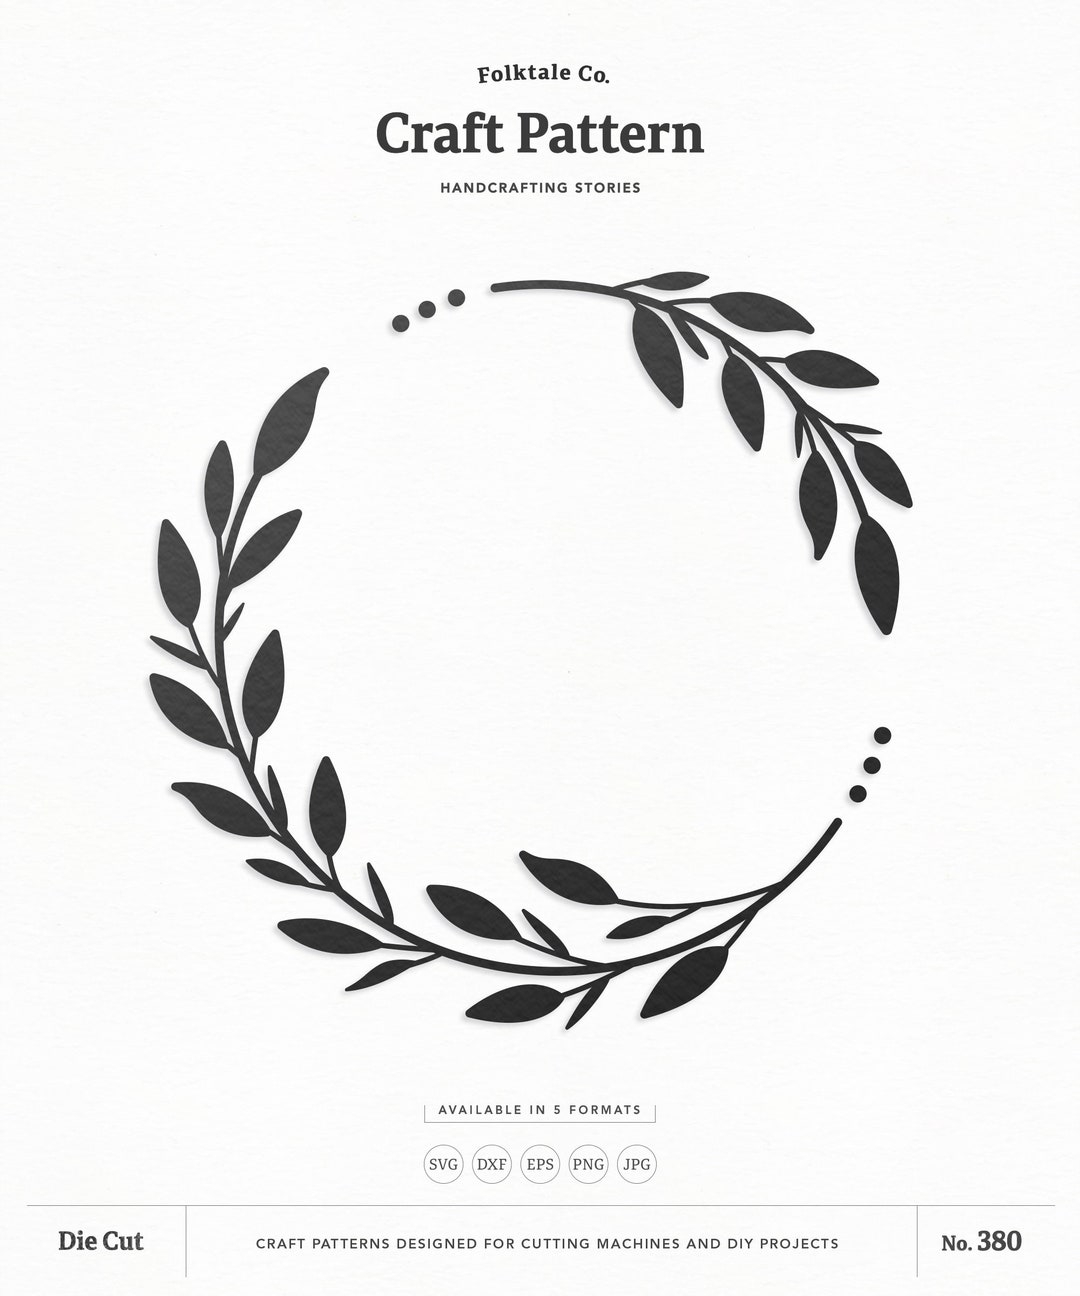 Board Game SVG Cut File for Cricut & Silhouette, DIY Project, Home Decor 